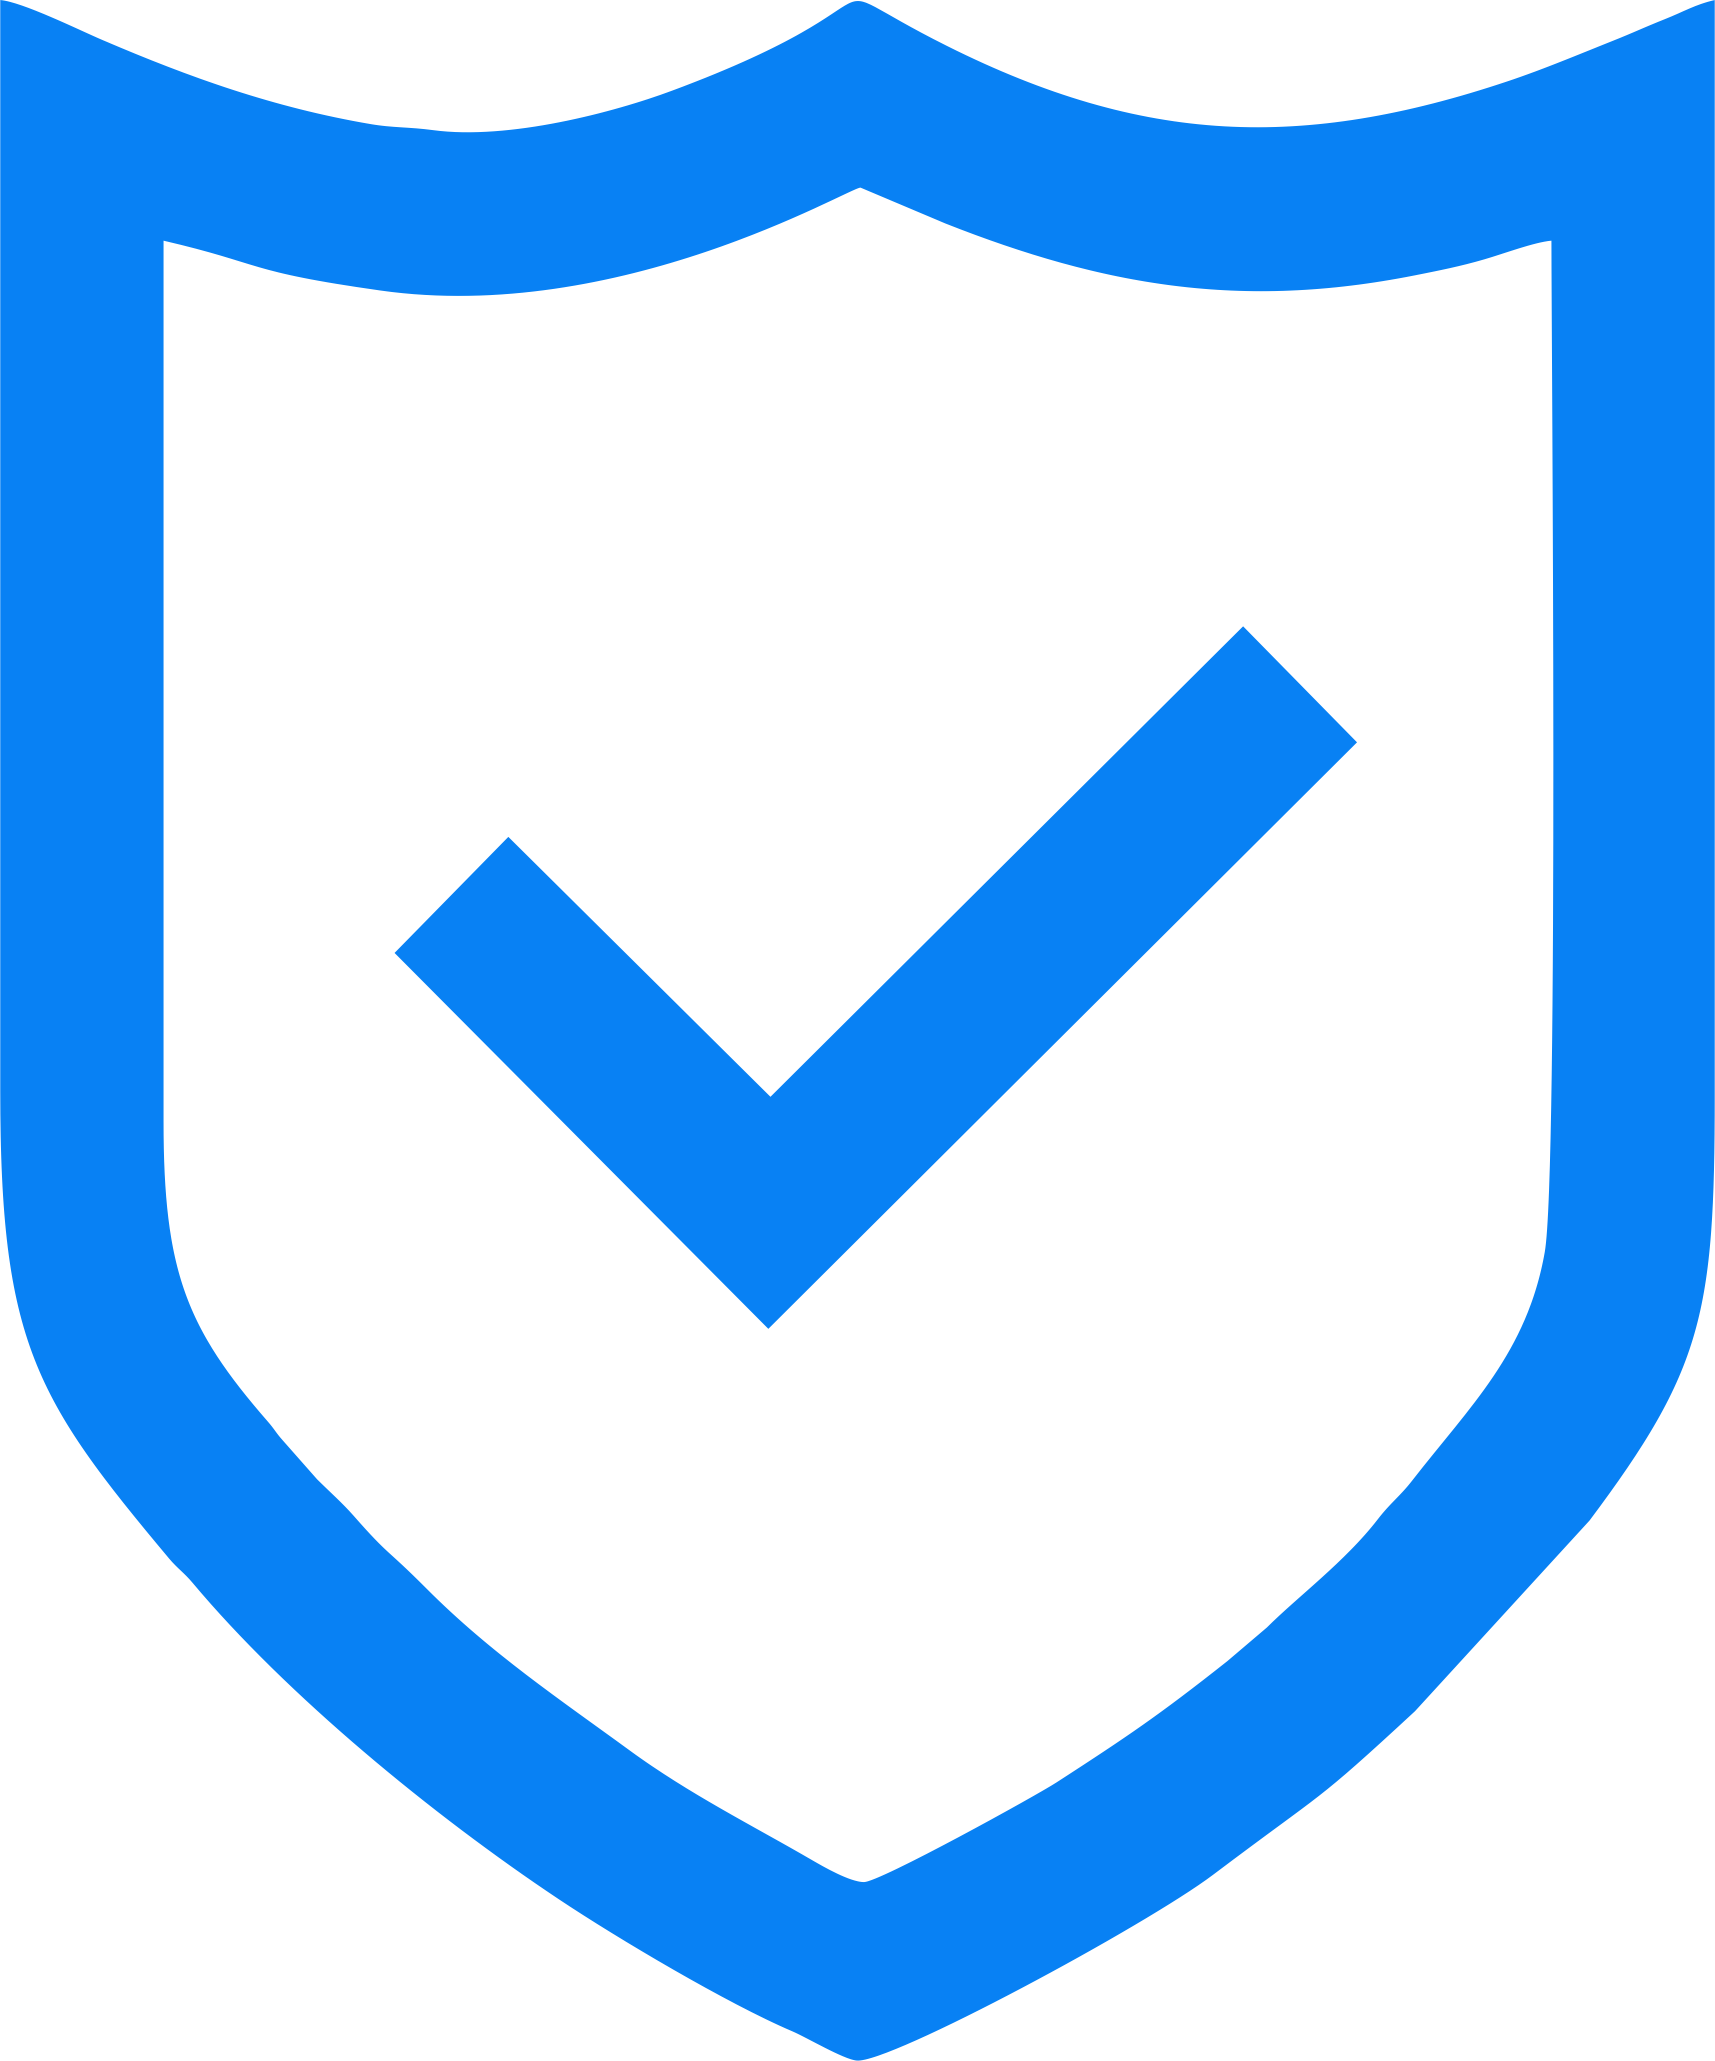 Ikona niebieska dobrowolne ubezpieczenia